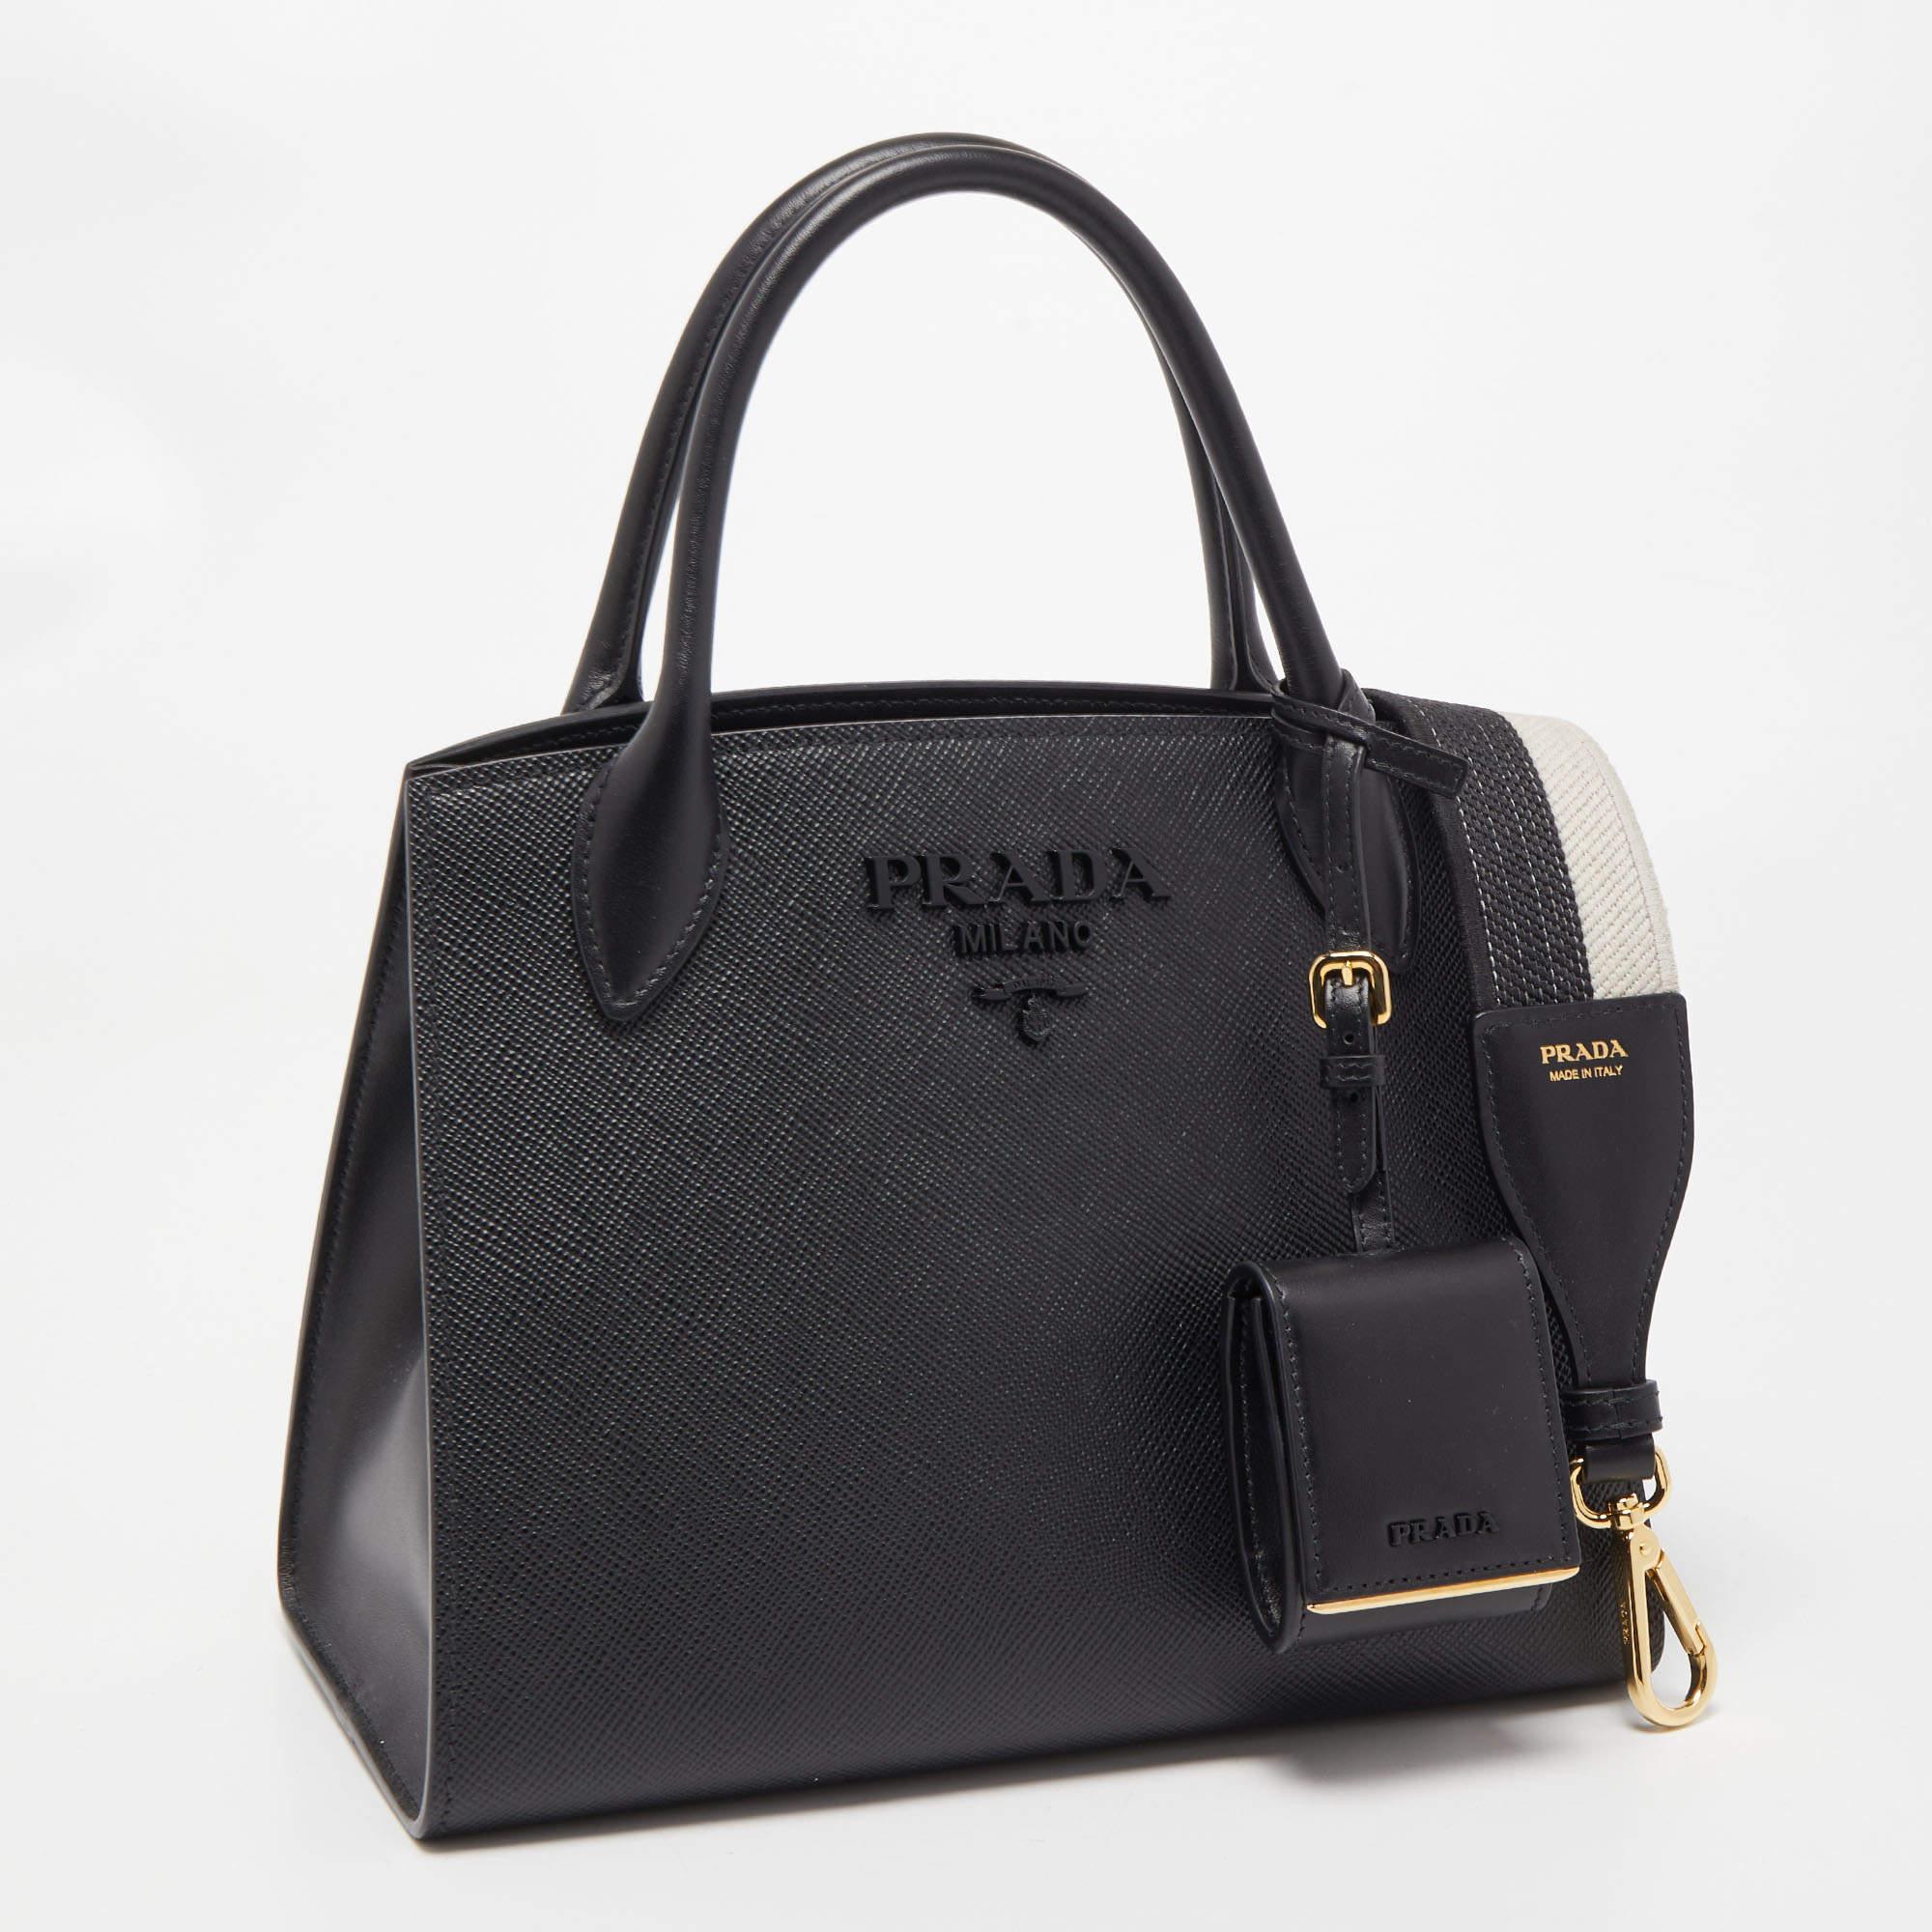 Women's Prada Black Saffiano Cuir Leather Small Monochrome Tote